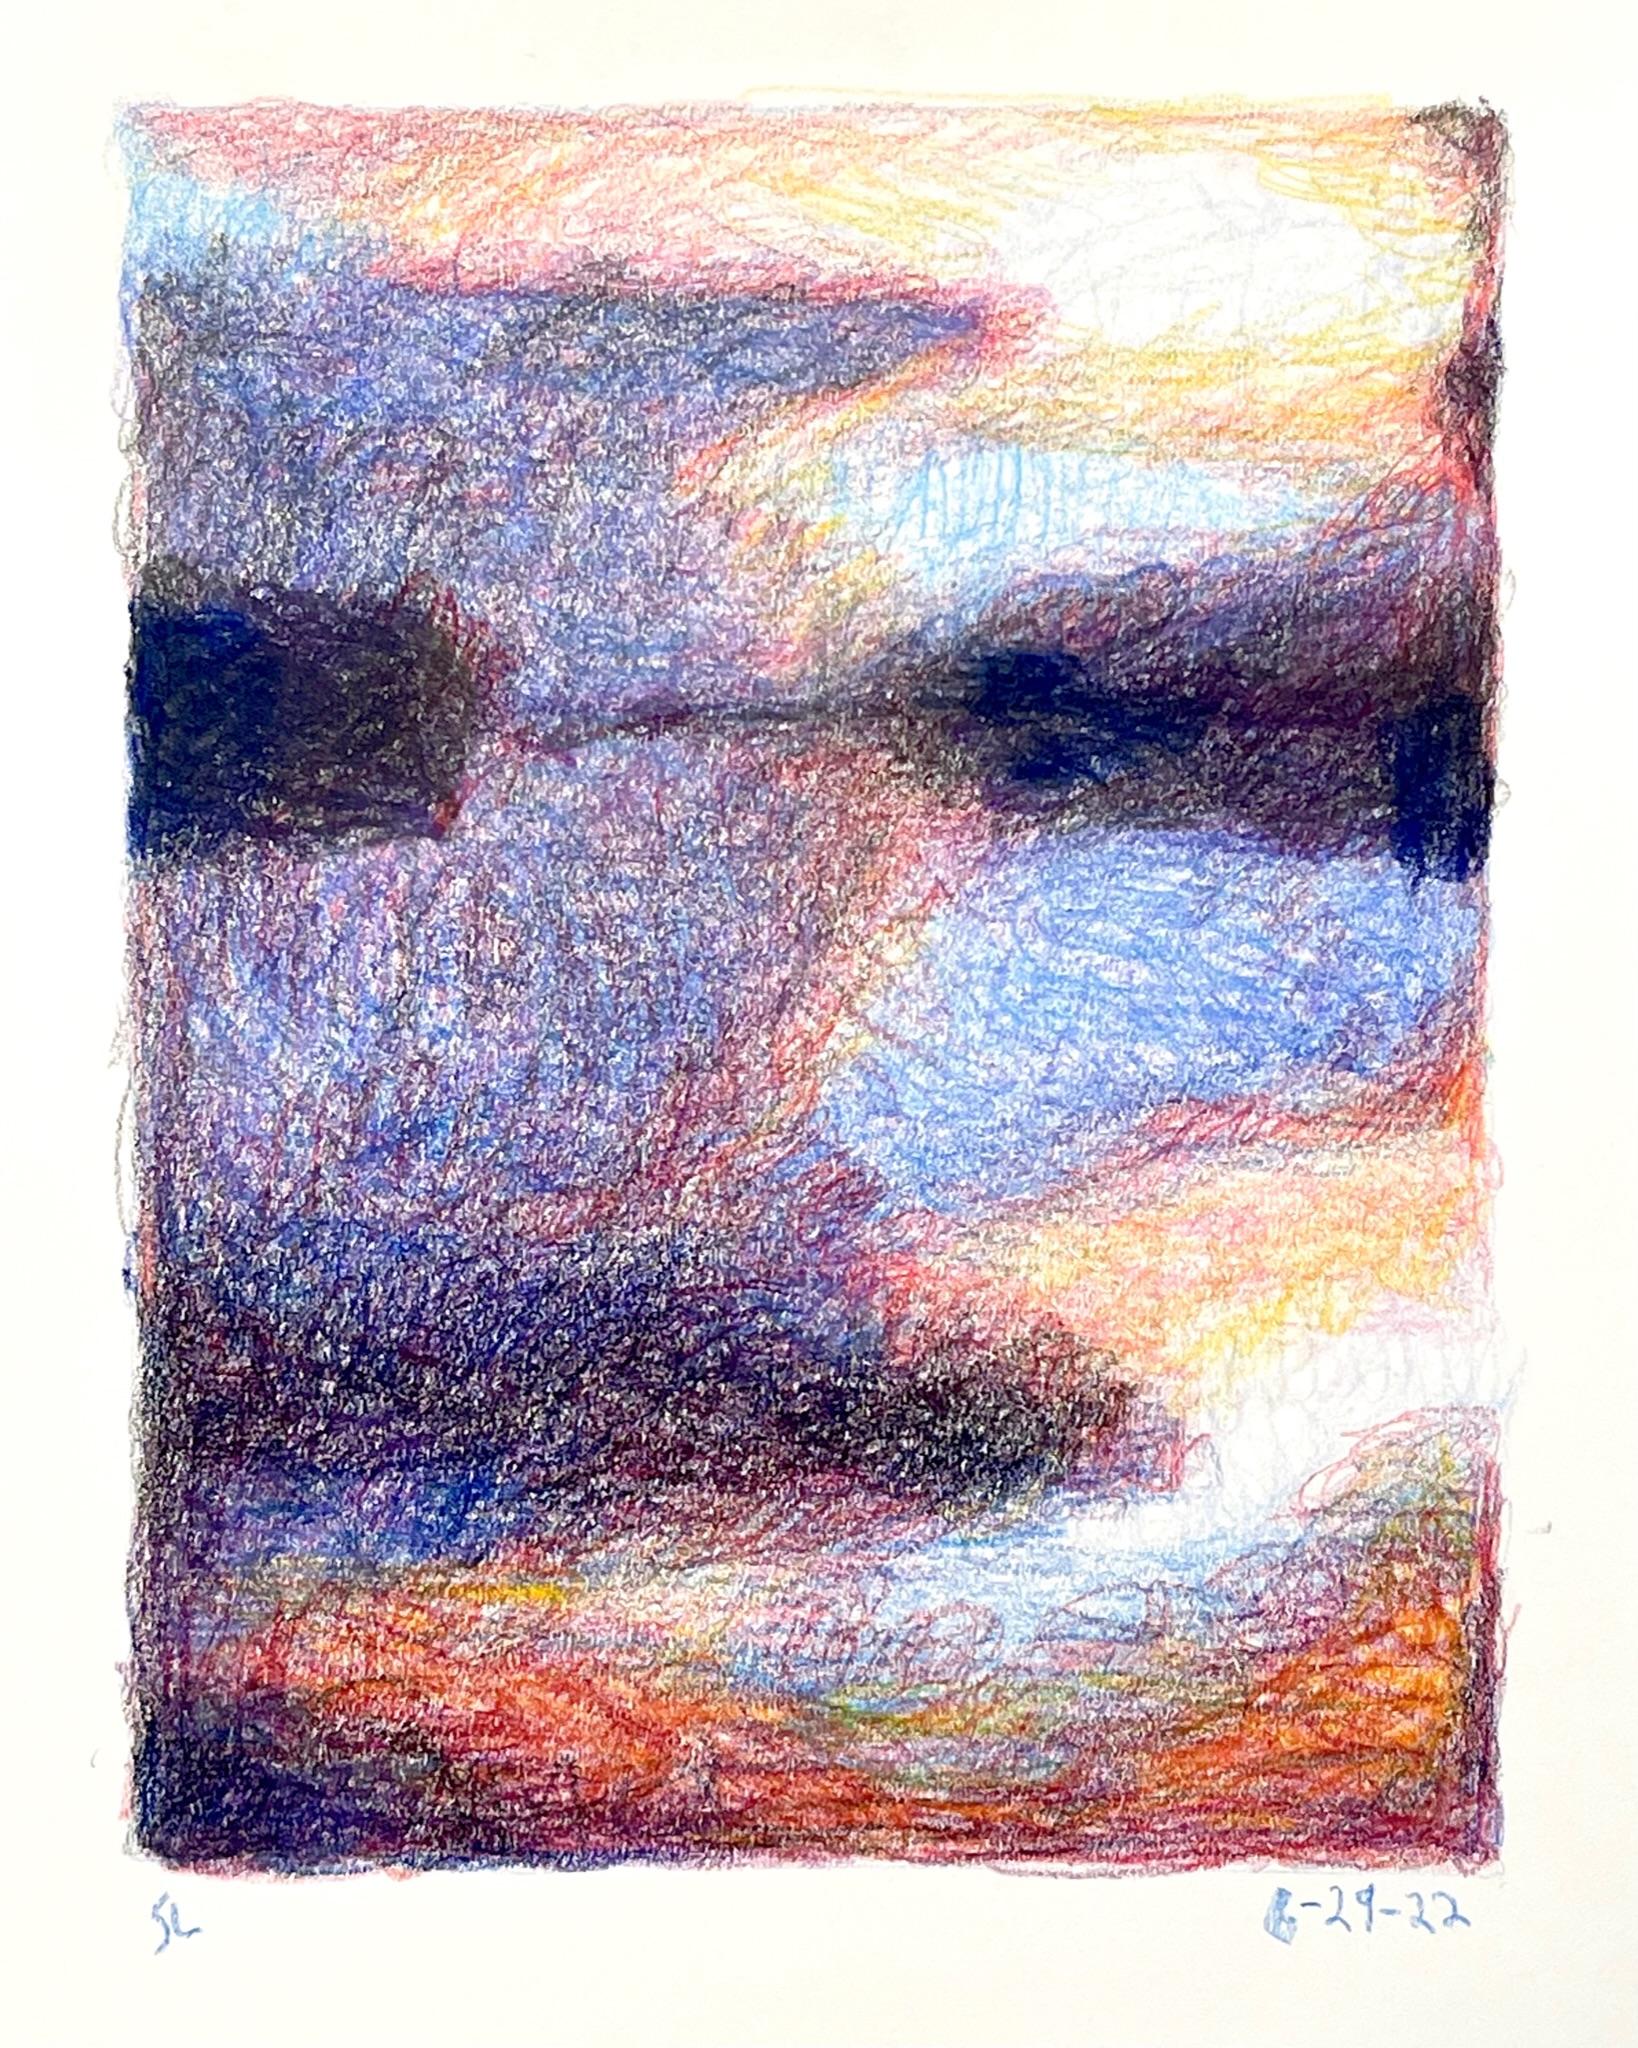 Abstract Drawing Sandy Litchfield - 6-29-22, dessin de paysage abstrait impressionniste au crayon en couleur